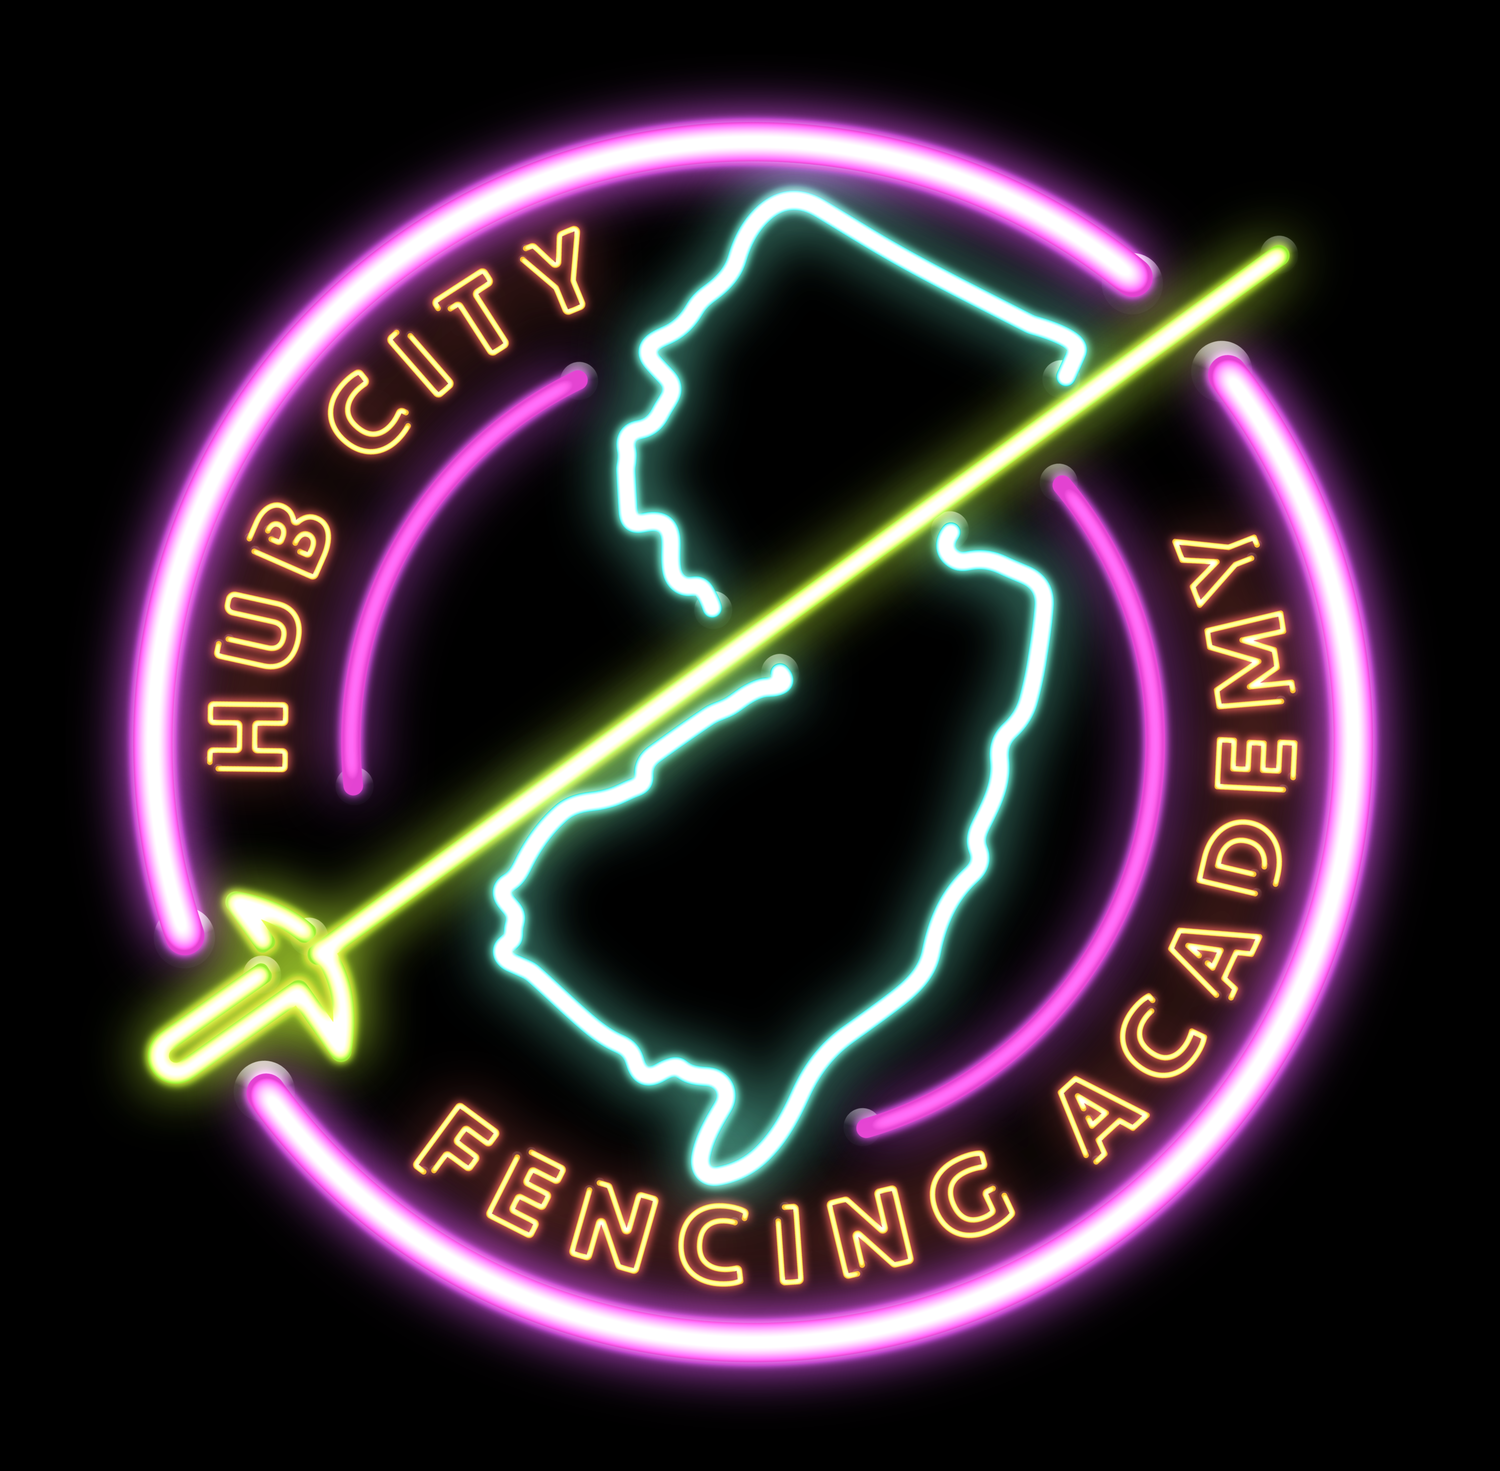 Hub City Fencing Academy